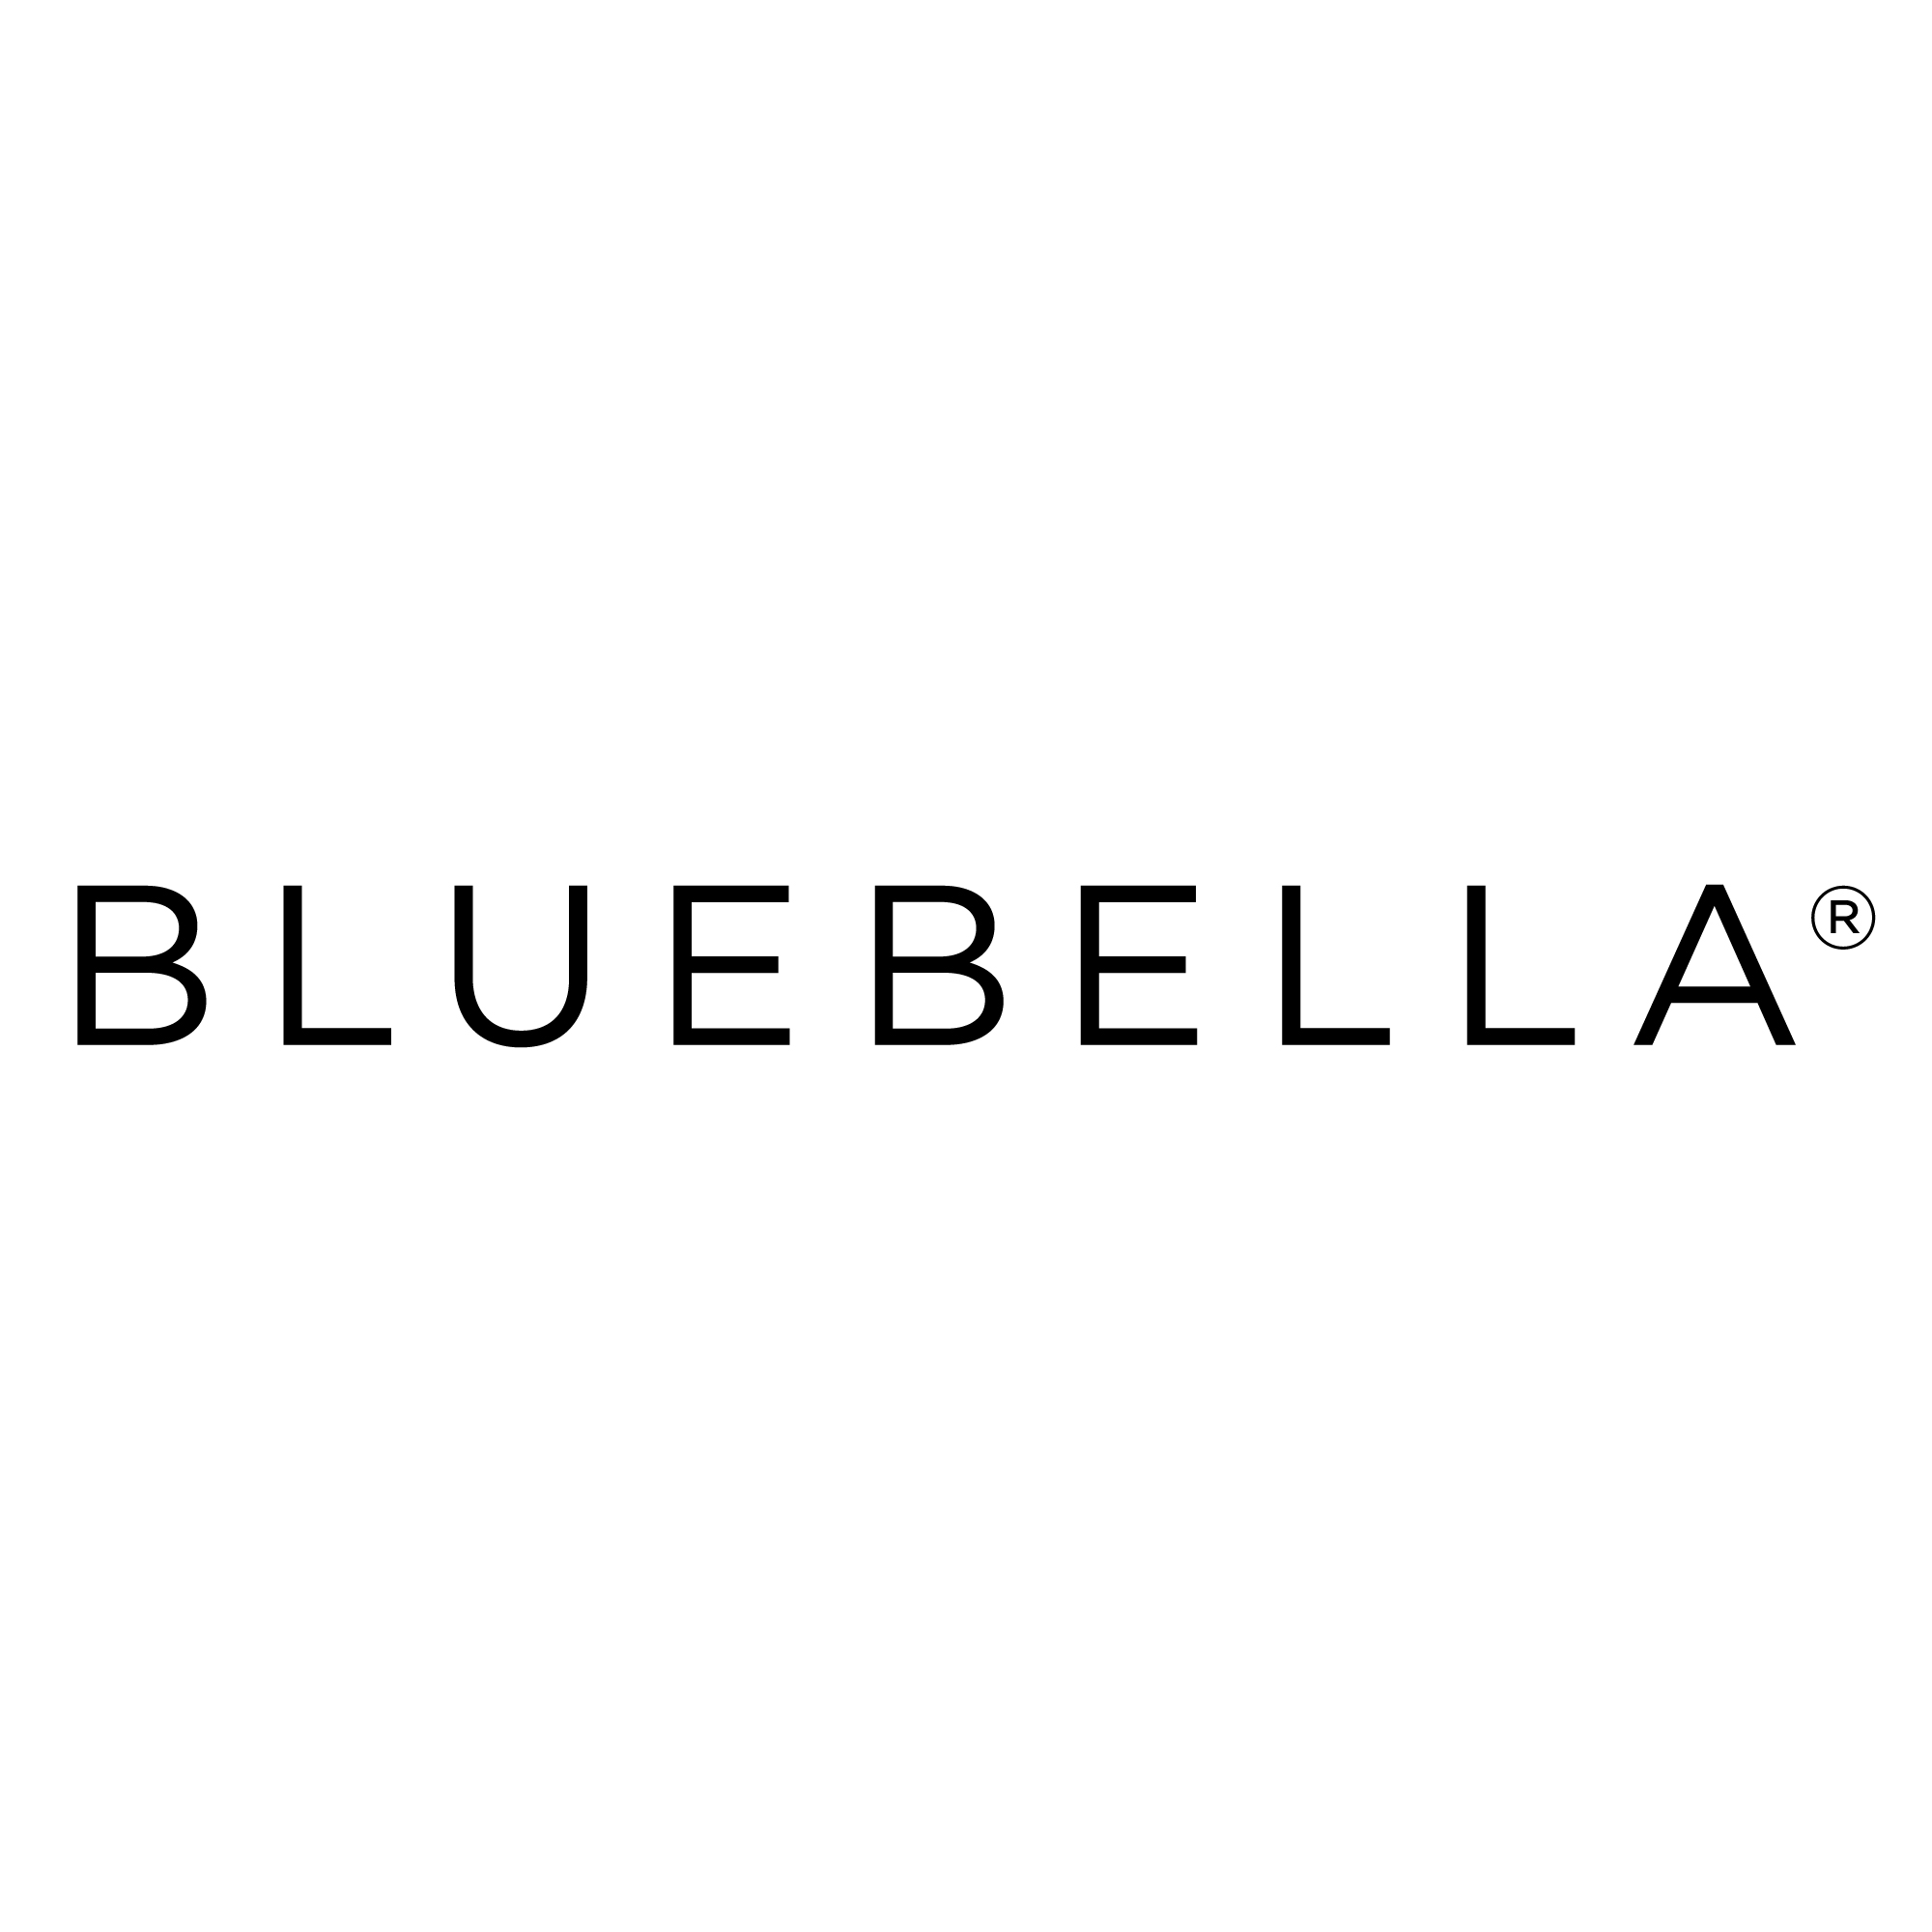 100% WORKING Bluebella Discount Code Australia ([month] [year]) 2